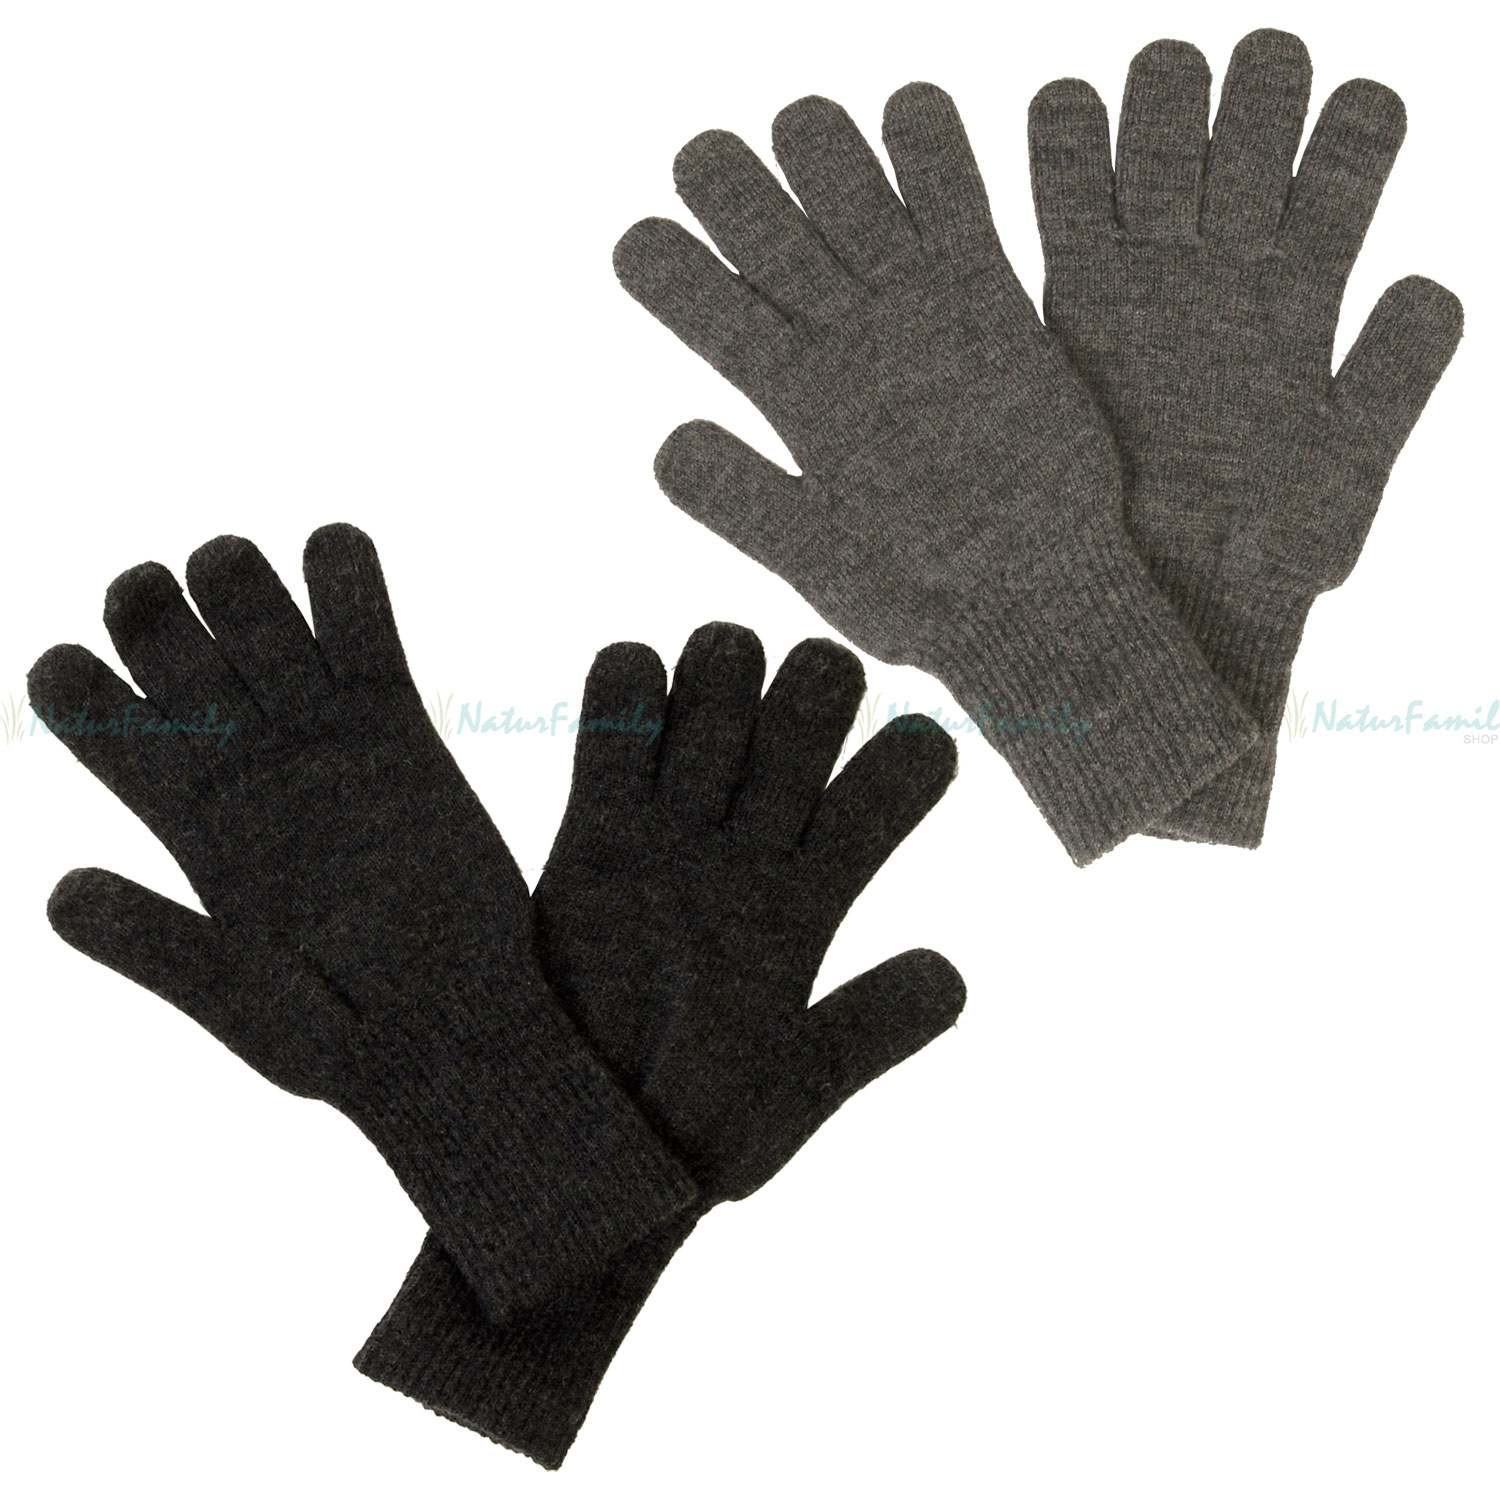 Reiff Strick Fingerhandschuhe 100 % Merino Schurwolle Handschuhe -  NaturFamily Shop - Naturtextilien für Babys, Kinder und ganze Familie | Trainingshandschuhe